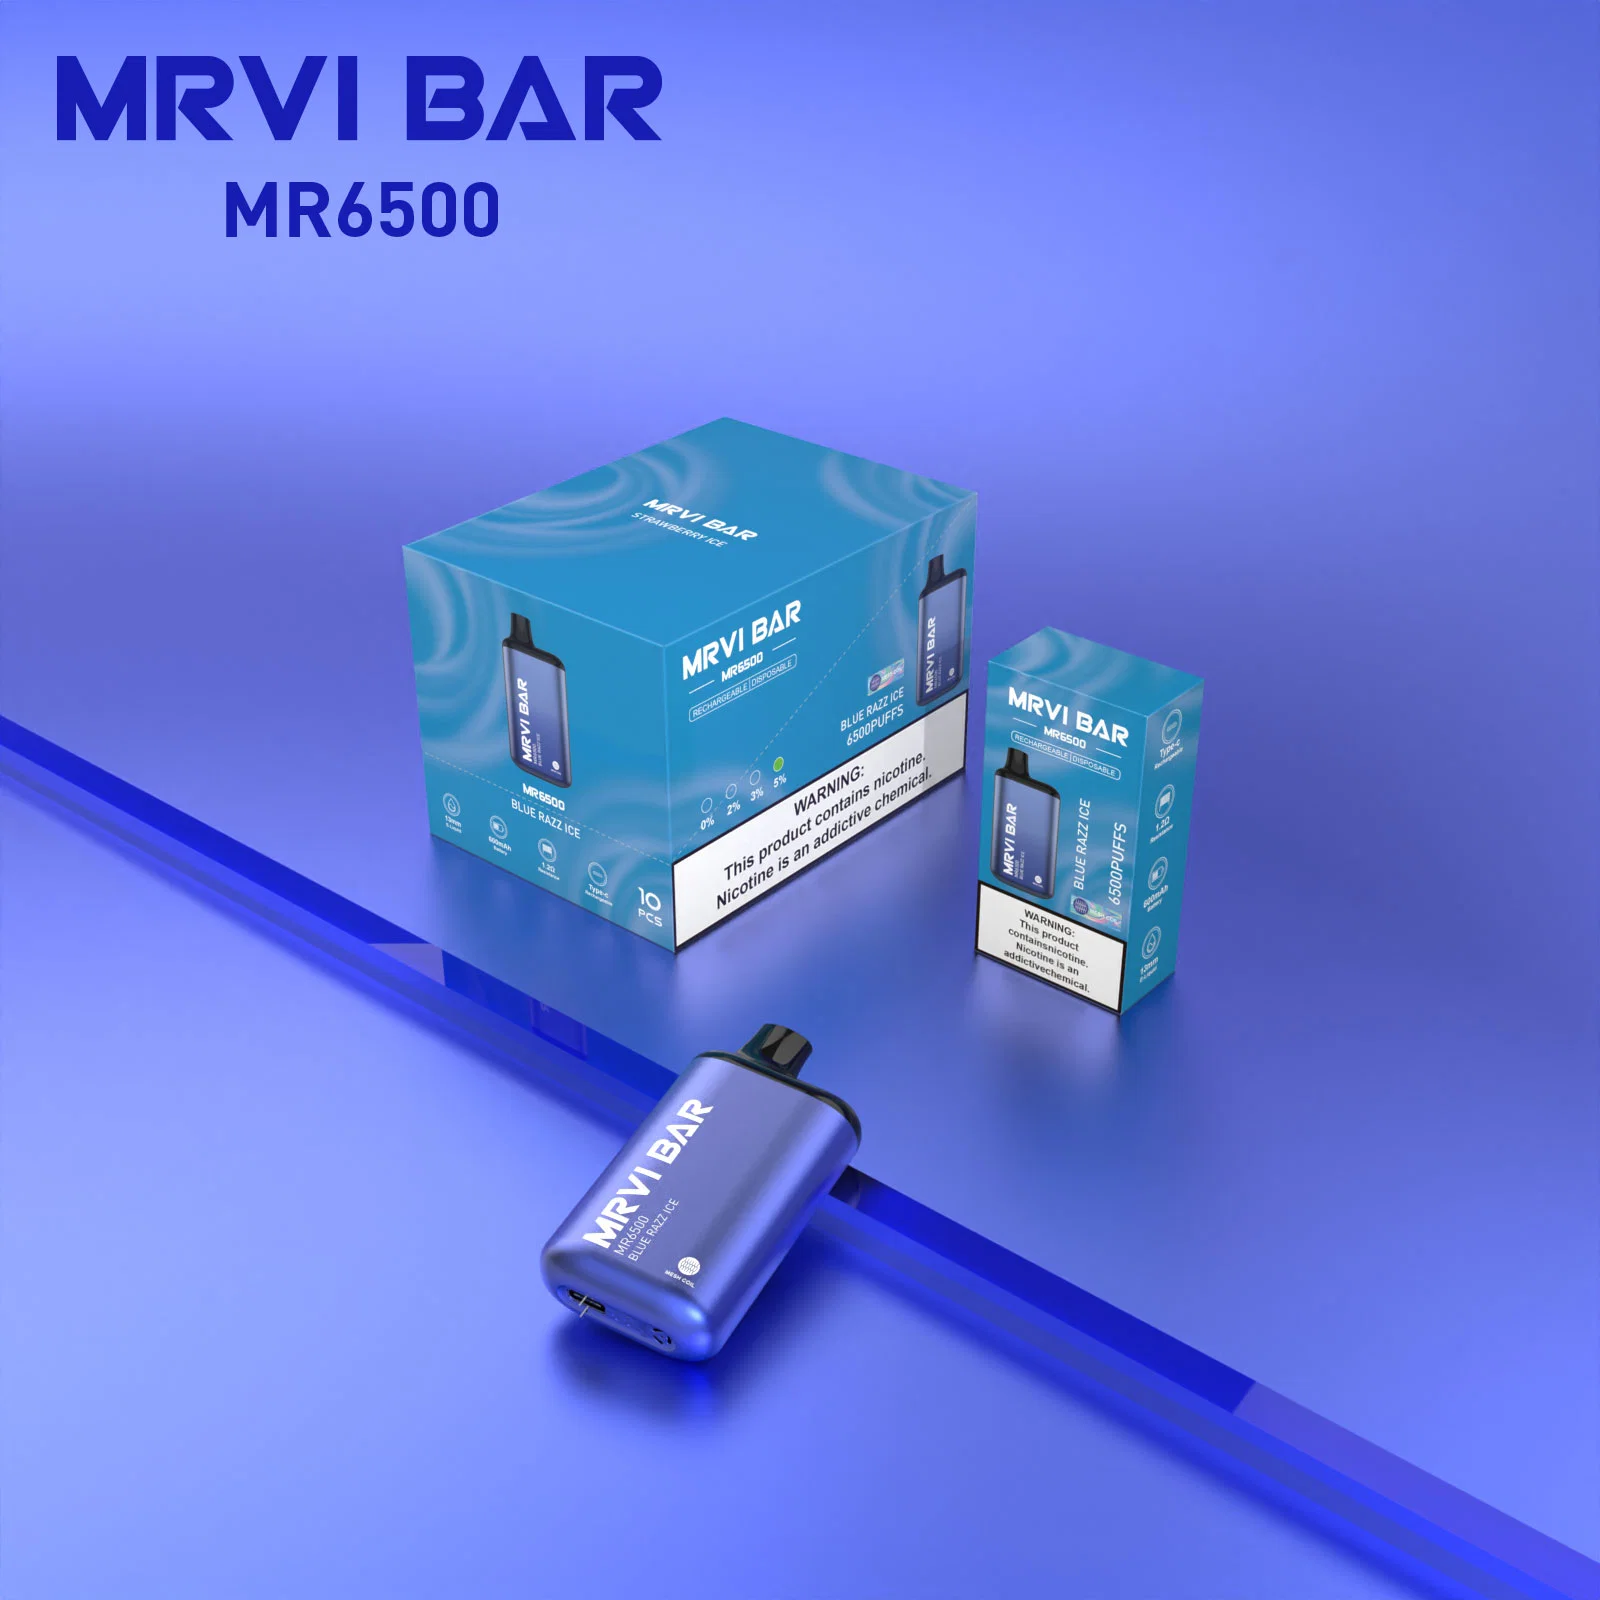 Originales de alta calidad Mrvi Bar 6500 inhalaciones de Vape tubo metálico de 600 mAh recargar la batería de 10 sabores E puro Wape